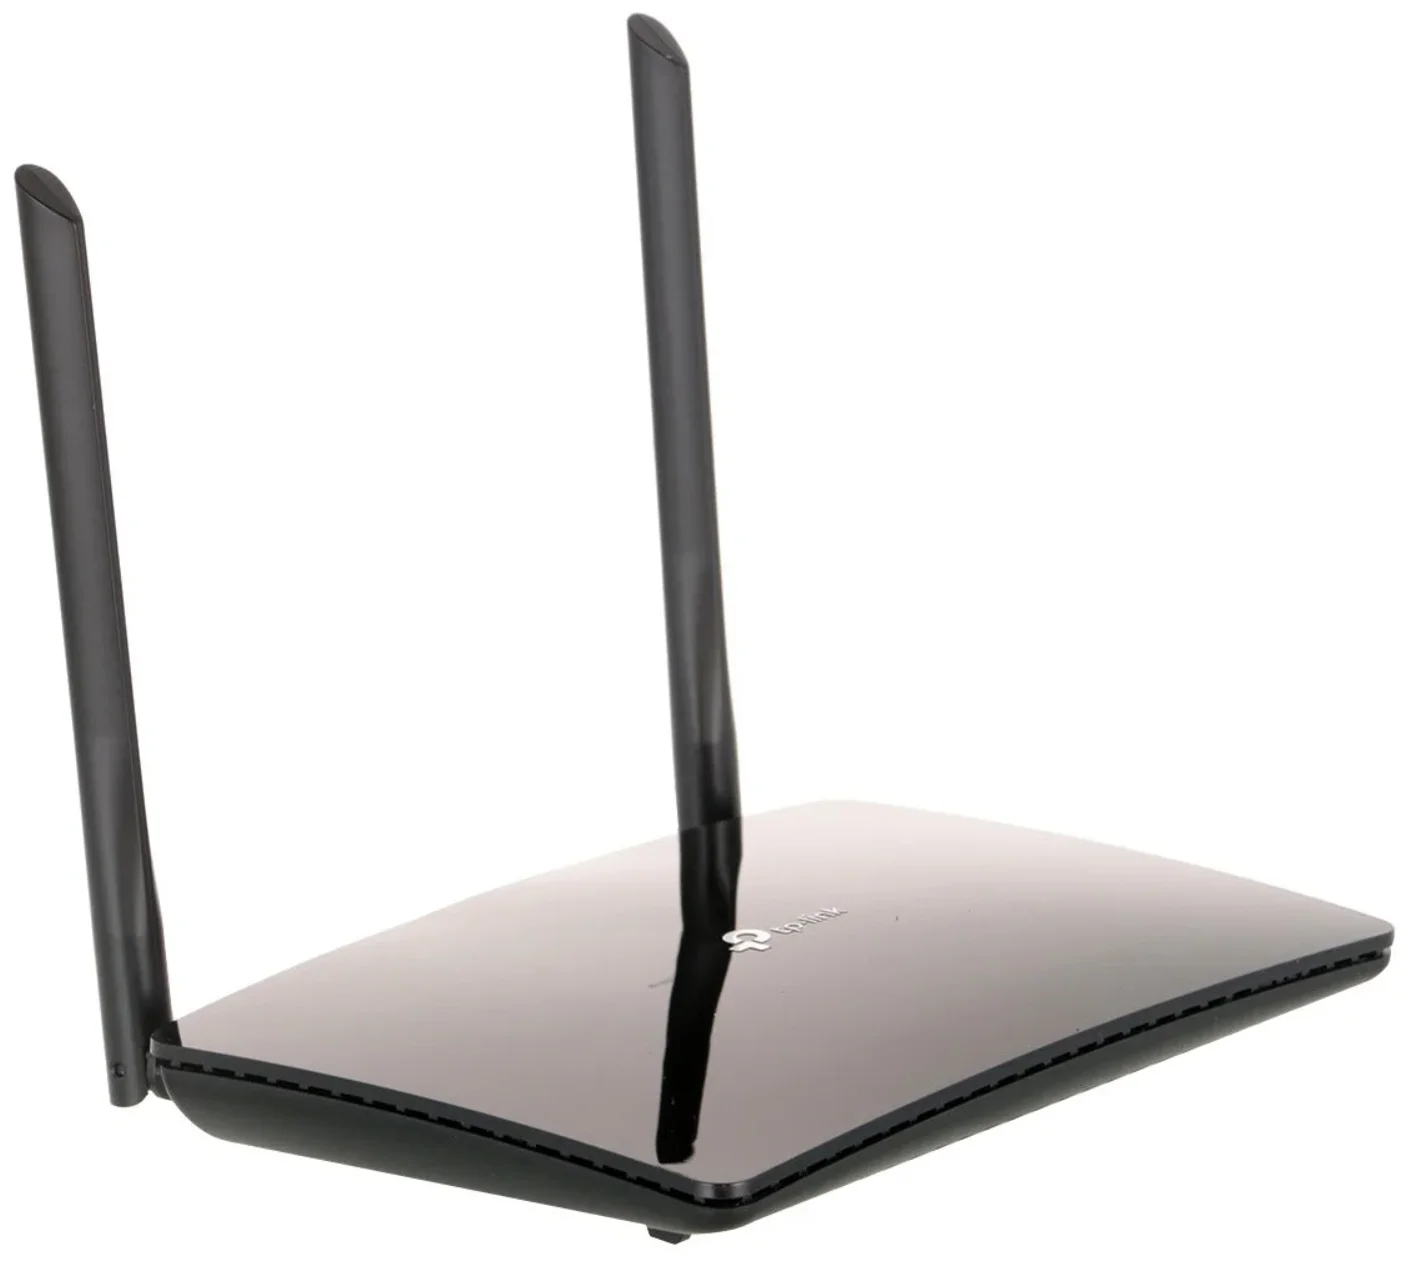 Wi-Fi TP-LINK TL-MR6400 - макс. скорость беспроводного соединения 300 Мбит/с